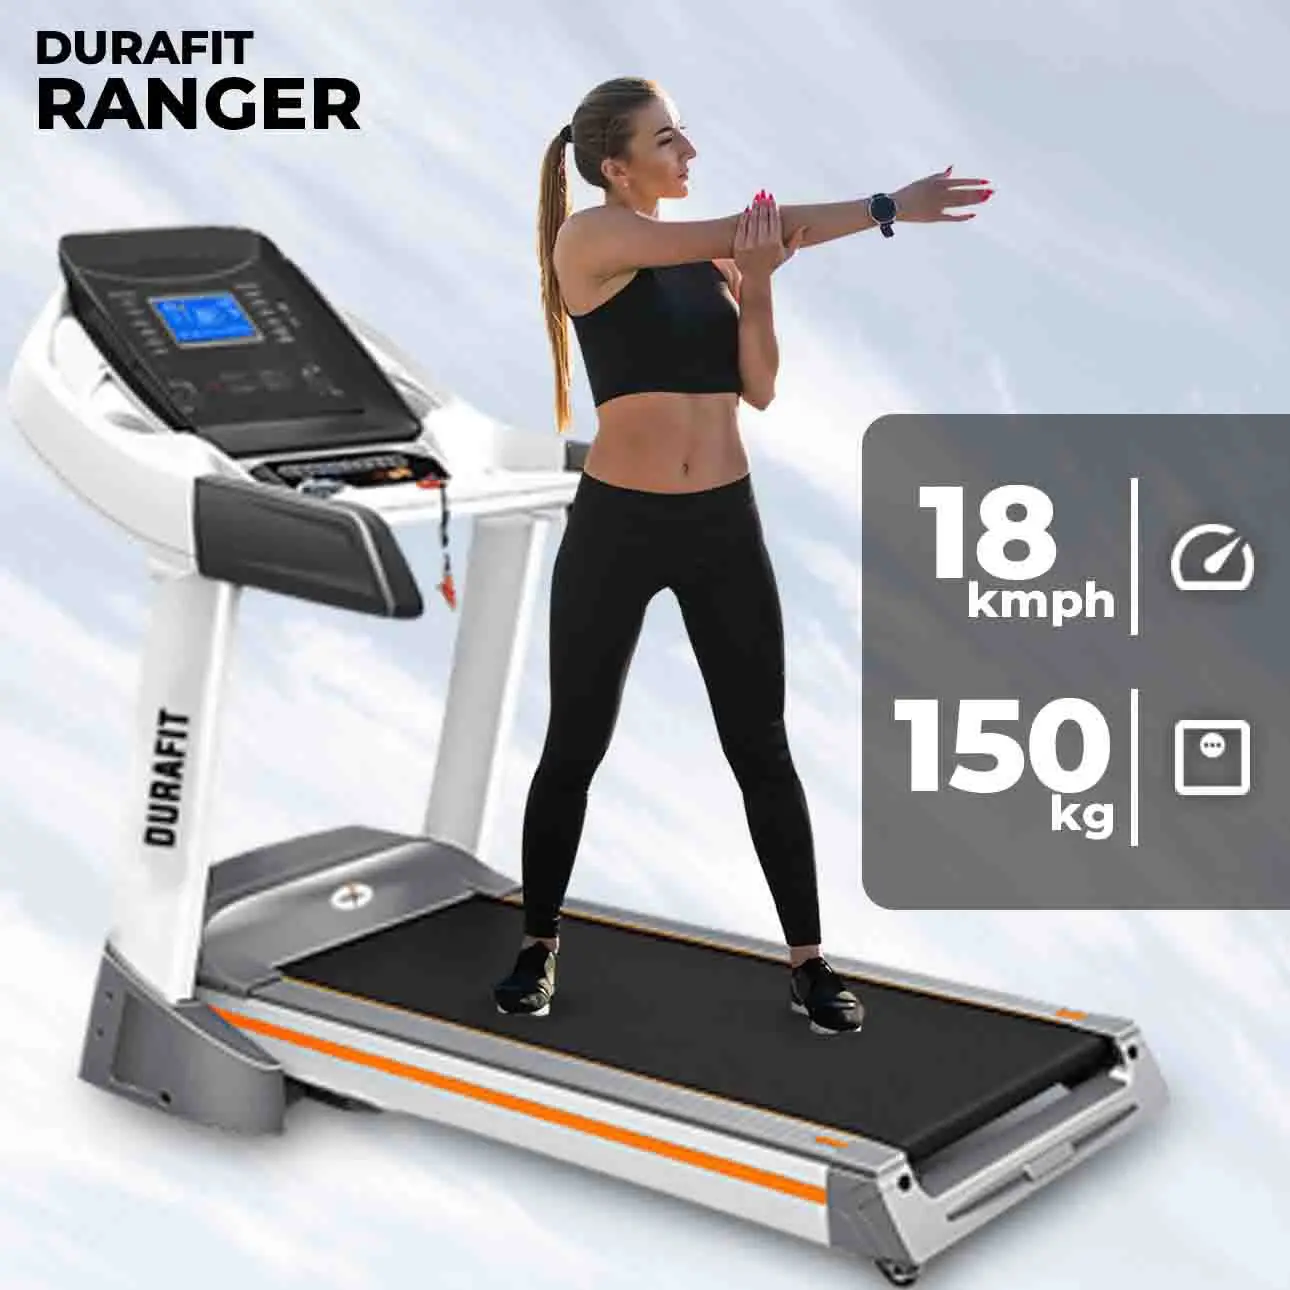 Durafit Ranger Treadmill